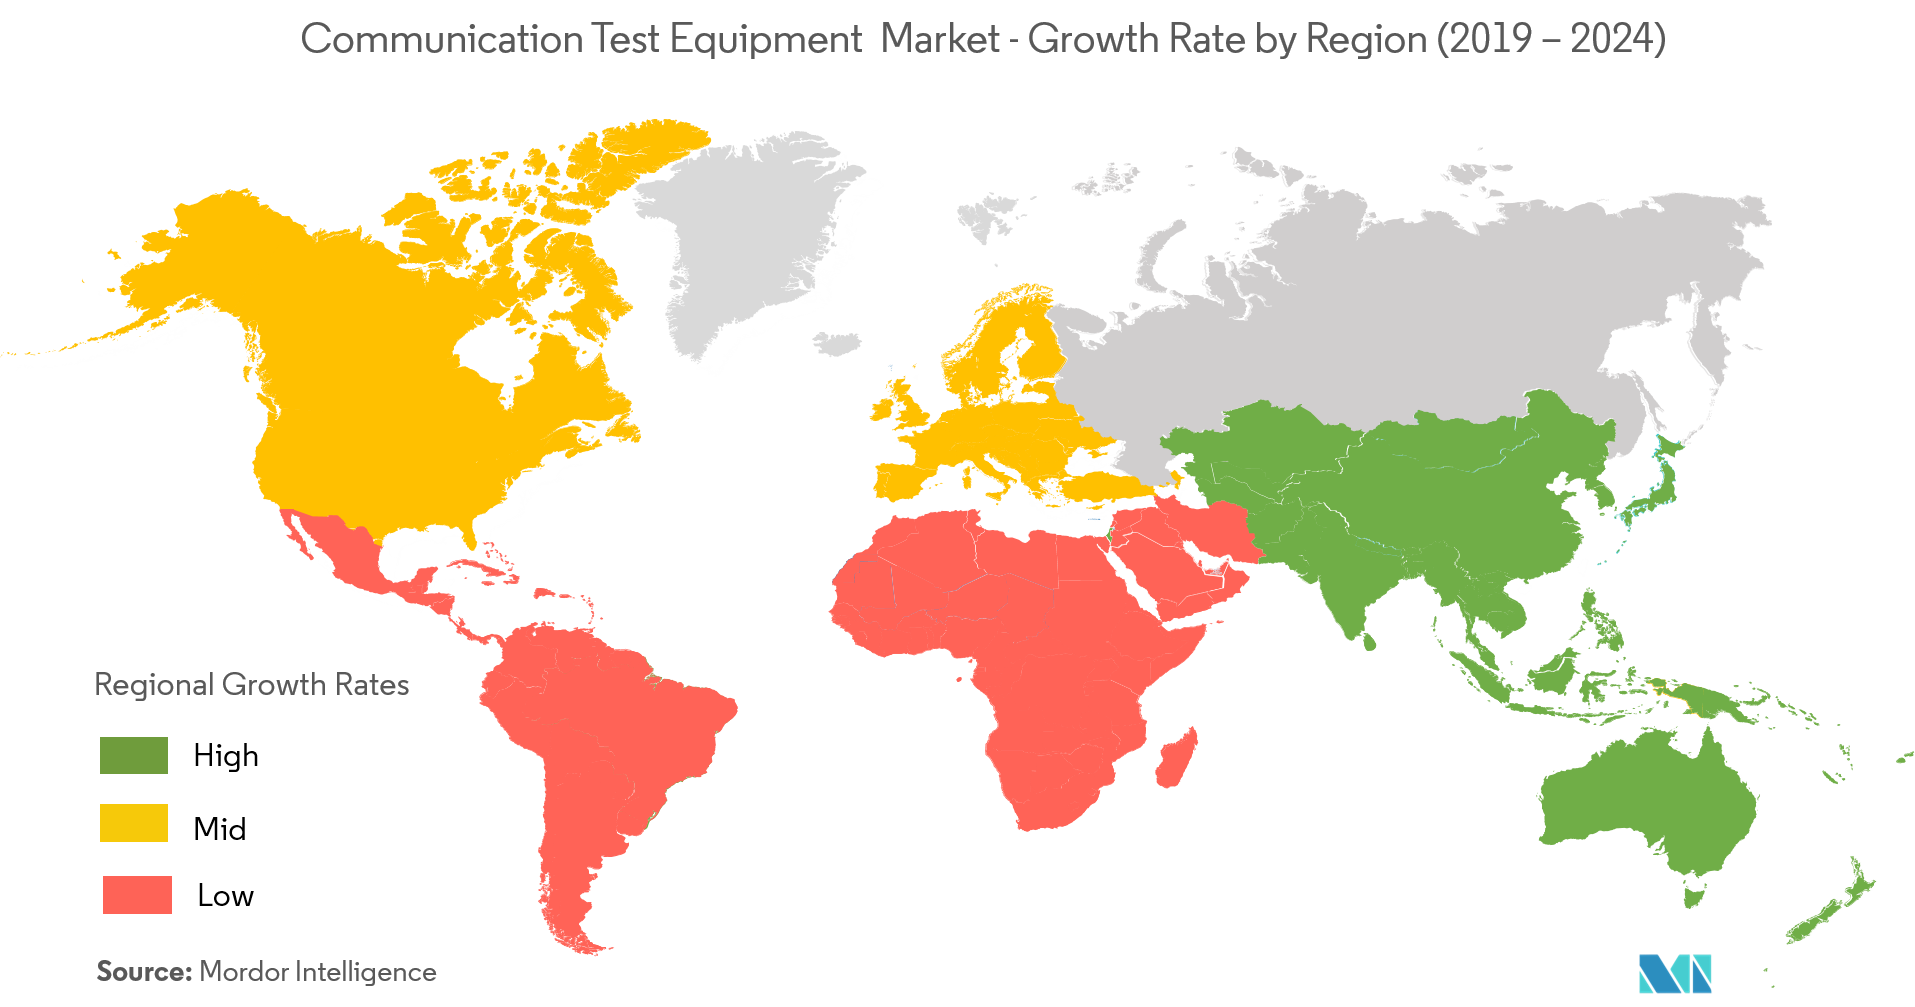 سوق معدات اختبار الاتصالات - معدل النمو حسب المنطقة (2019 - 2024)